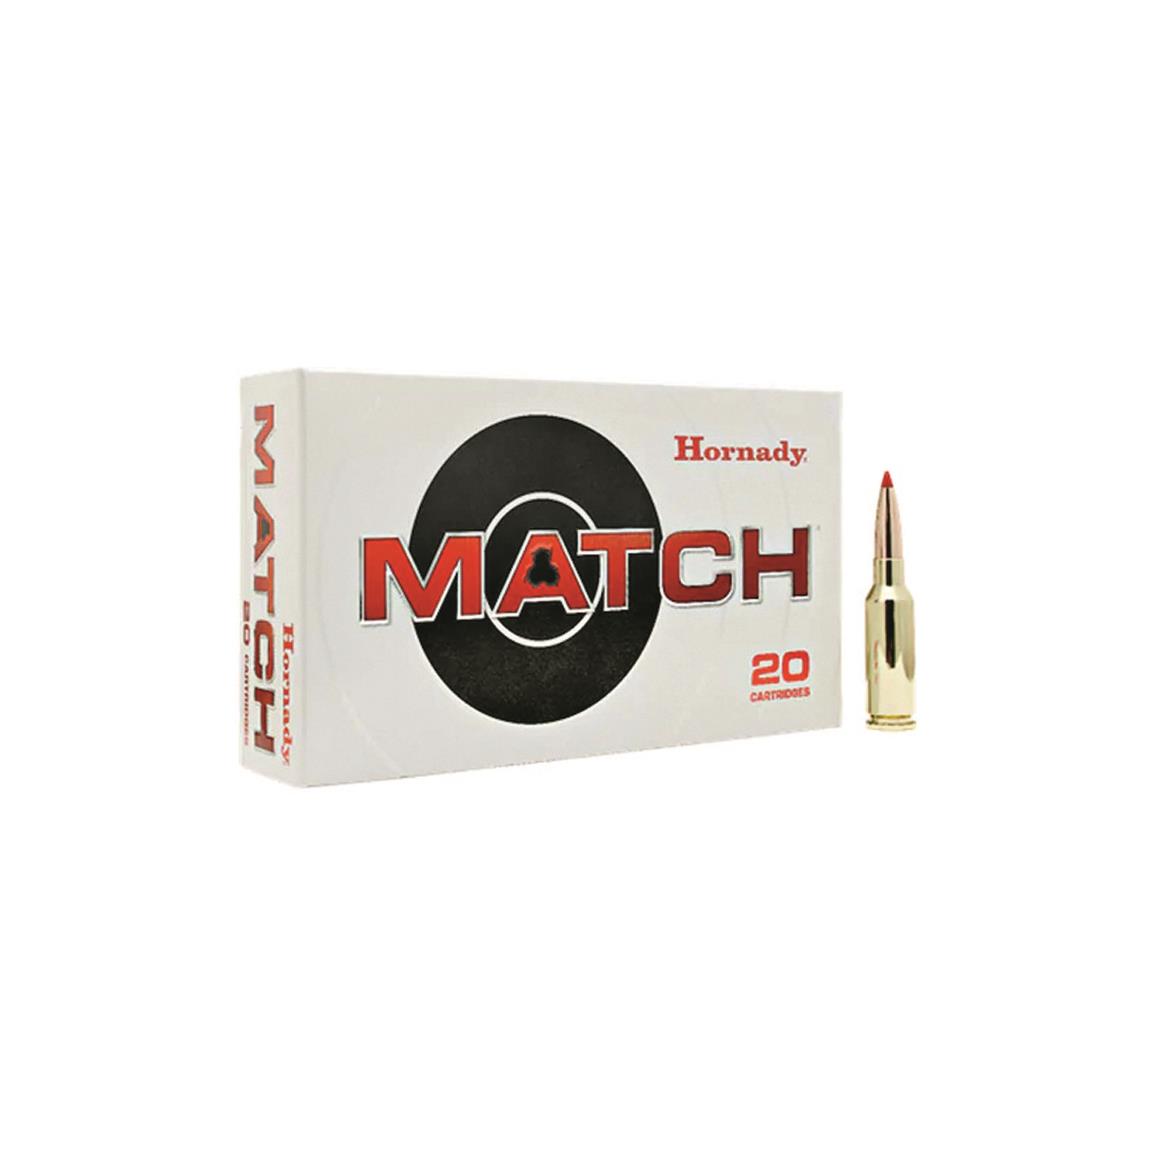 Hornady Match, 6mm ARC, ELD Match, 108 Grain, 20 Rounds